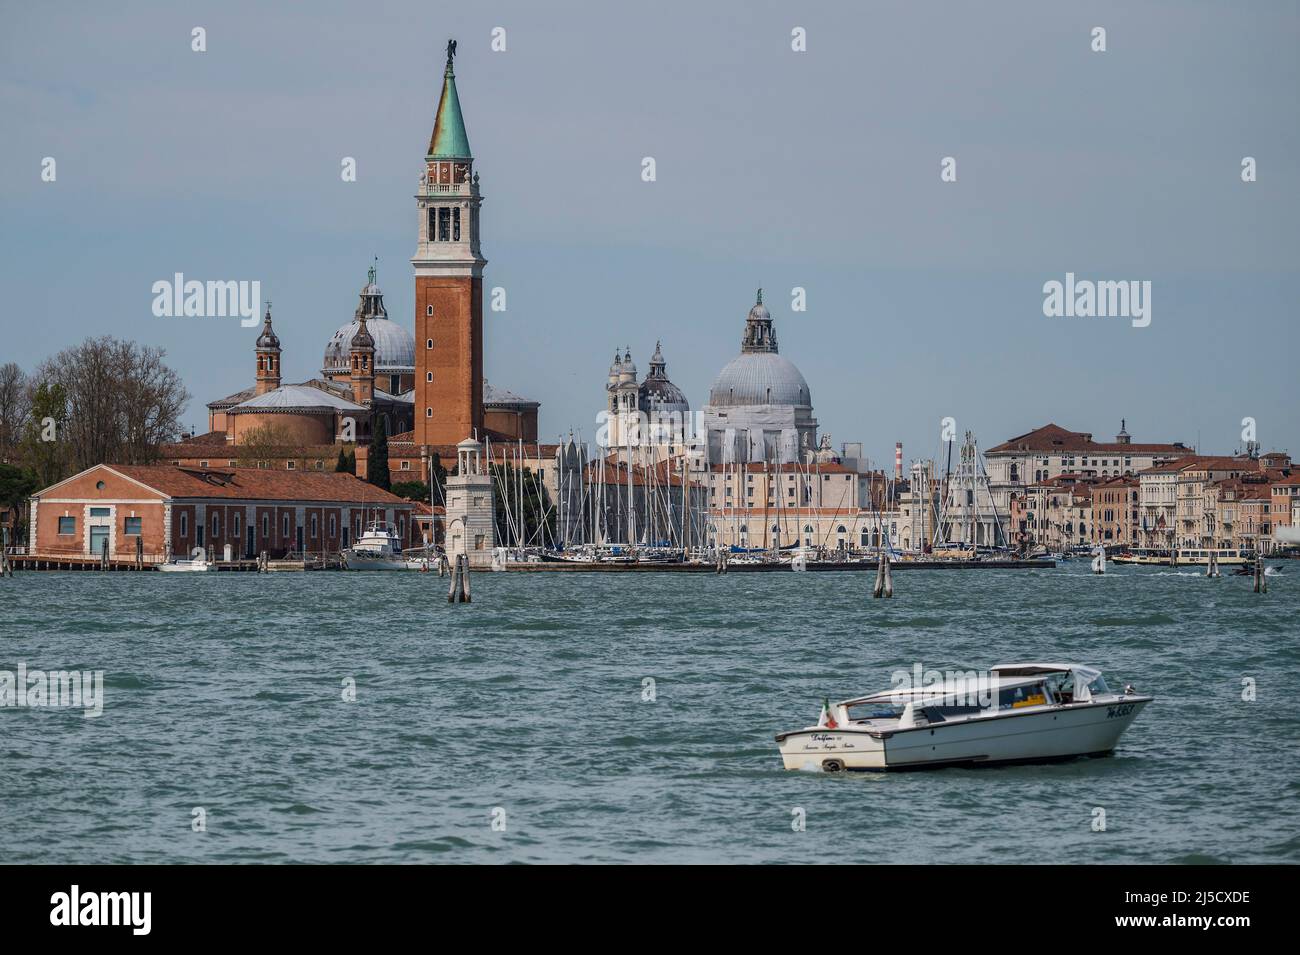 Un bateau-taxi sur la Canale di San Marco en face de l'église de San Giorgio Maggiore sur la Canale di San Marco - les canaux sont les principales artères portant toutes les formes de transport d'eau - Venise au début de la Biennale di Venezia en 2022. Banque D'Images